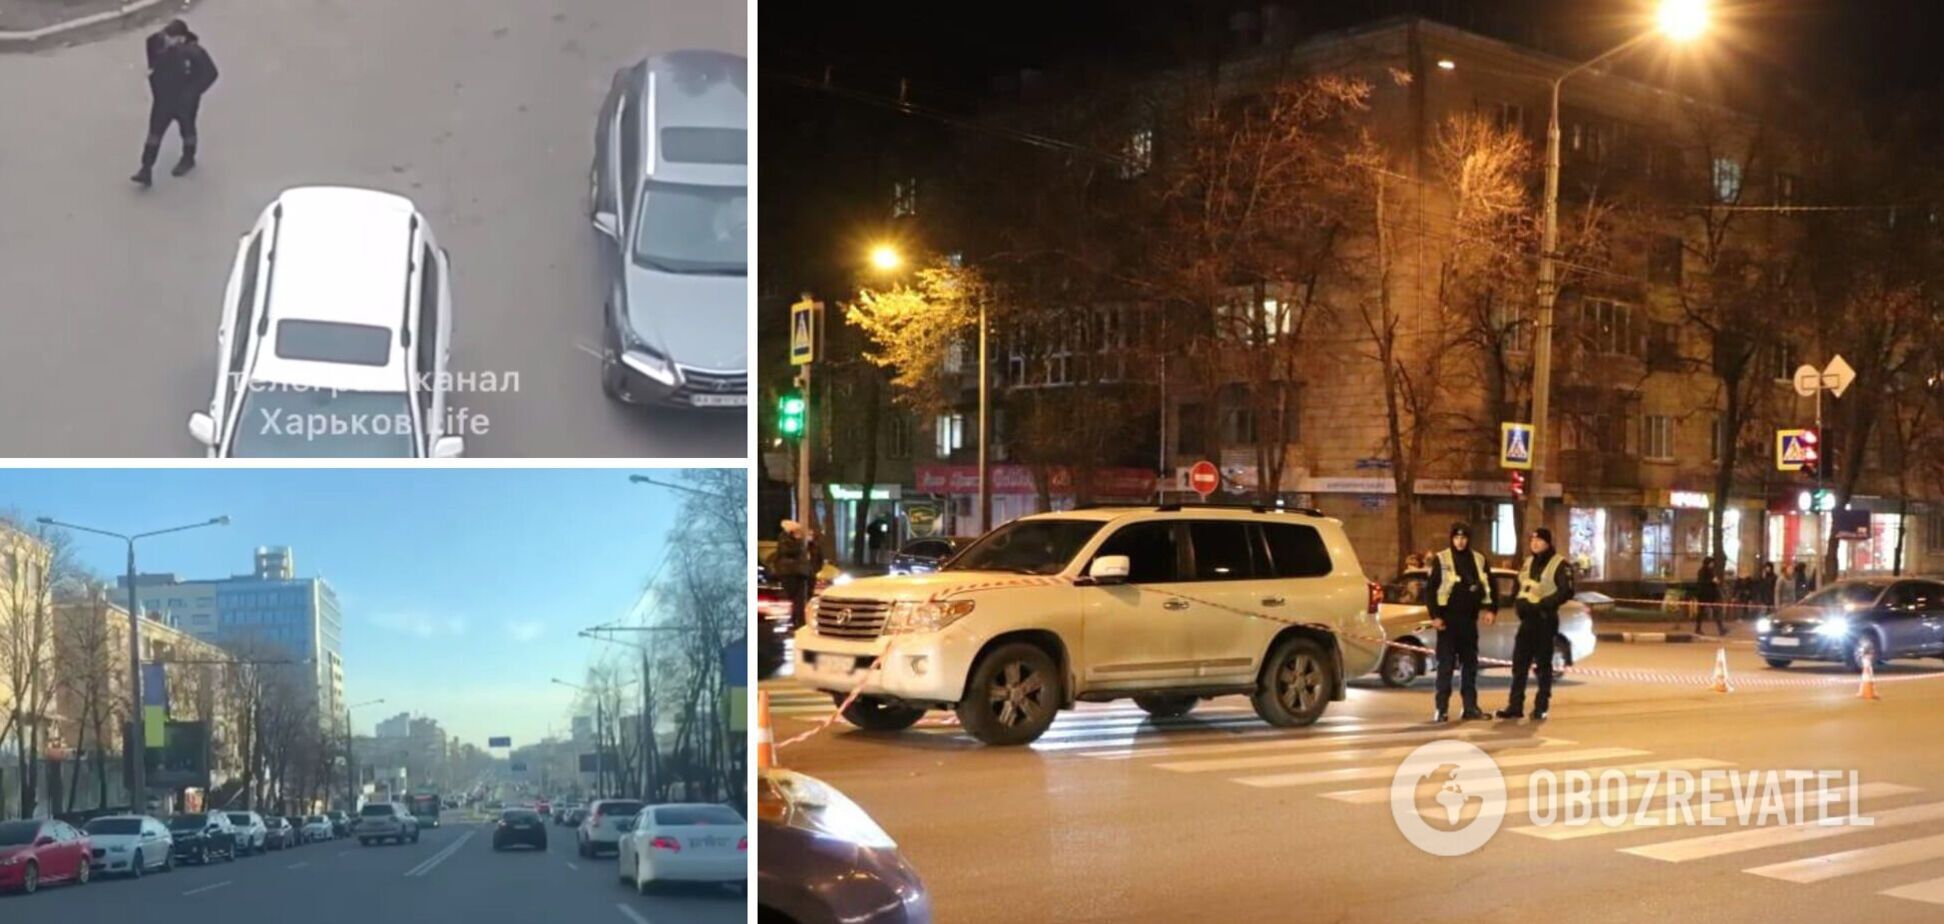 Мог быть под наркотиками: что известно о водителе, сбившем детей в Харькове. Фото и видео